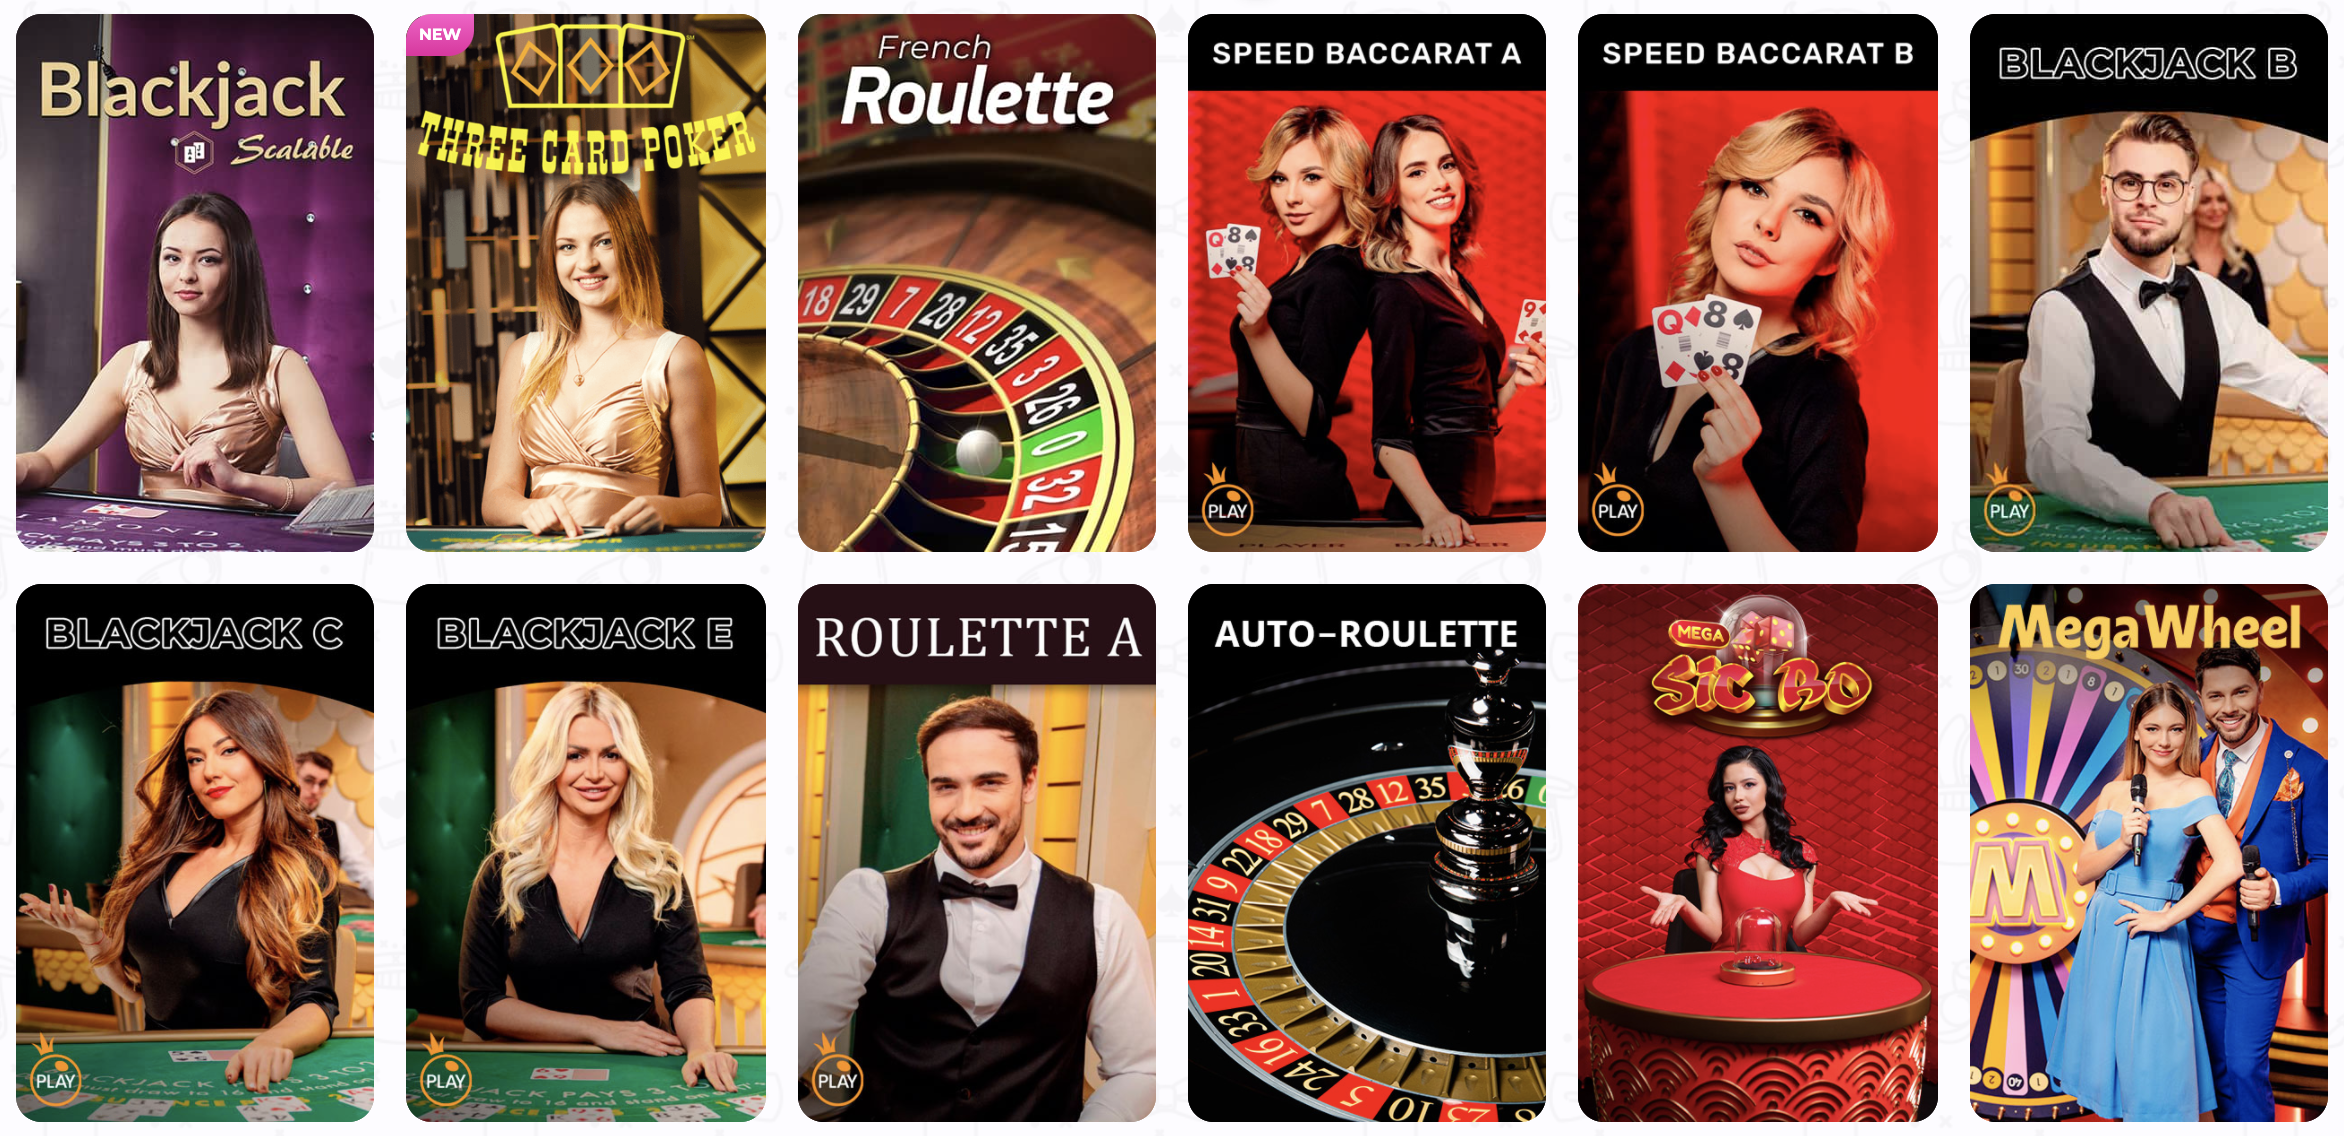 Zobacz ofertę kasyna na żywo, znajdziesz w nim np. ruletkę, pokera i inne gry karciane.